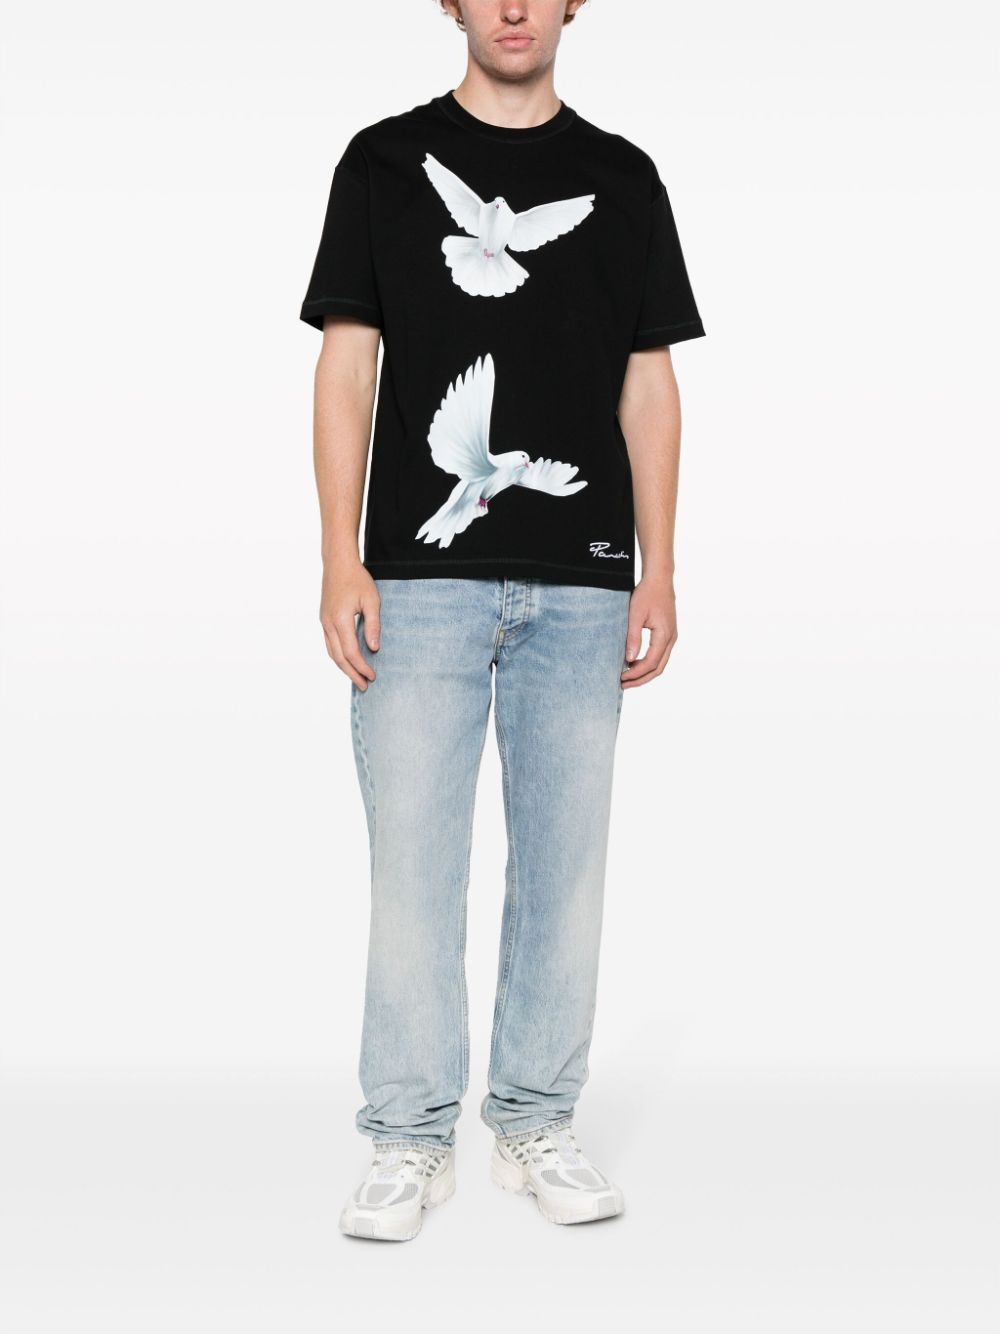 3PARADIS T-shirt met vogelprint - Zwart